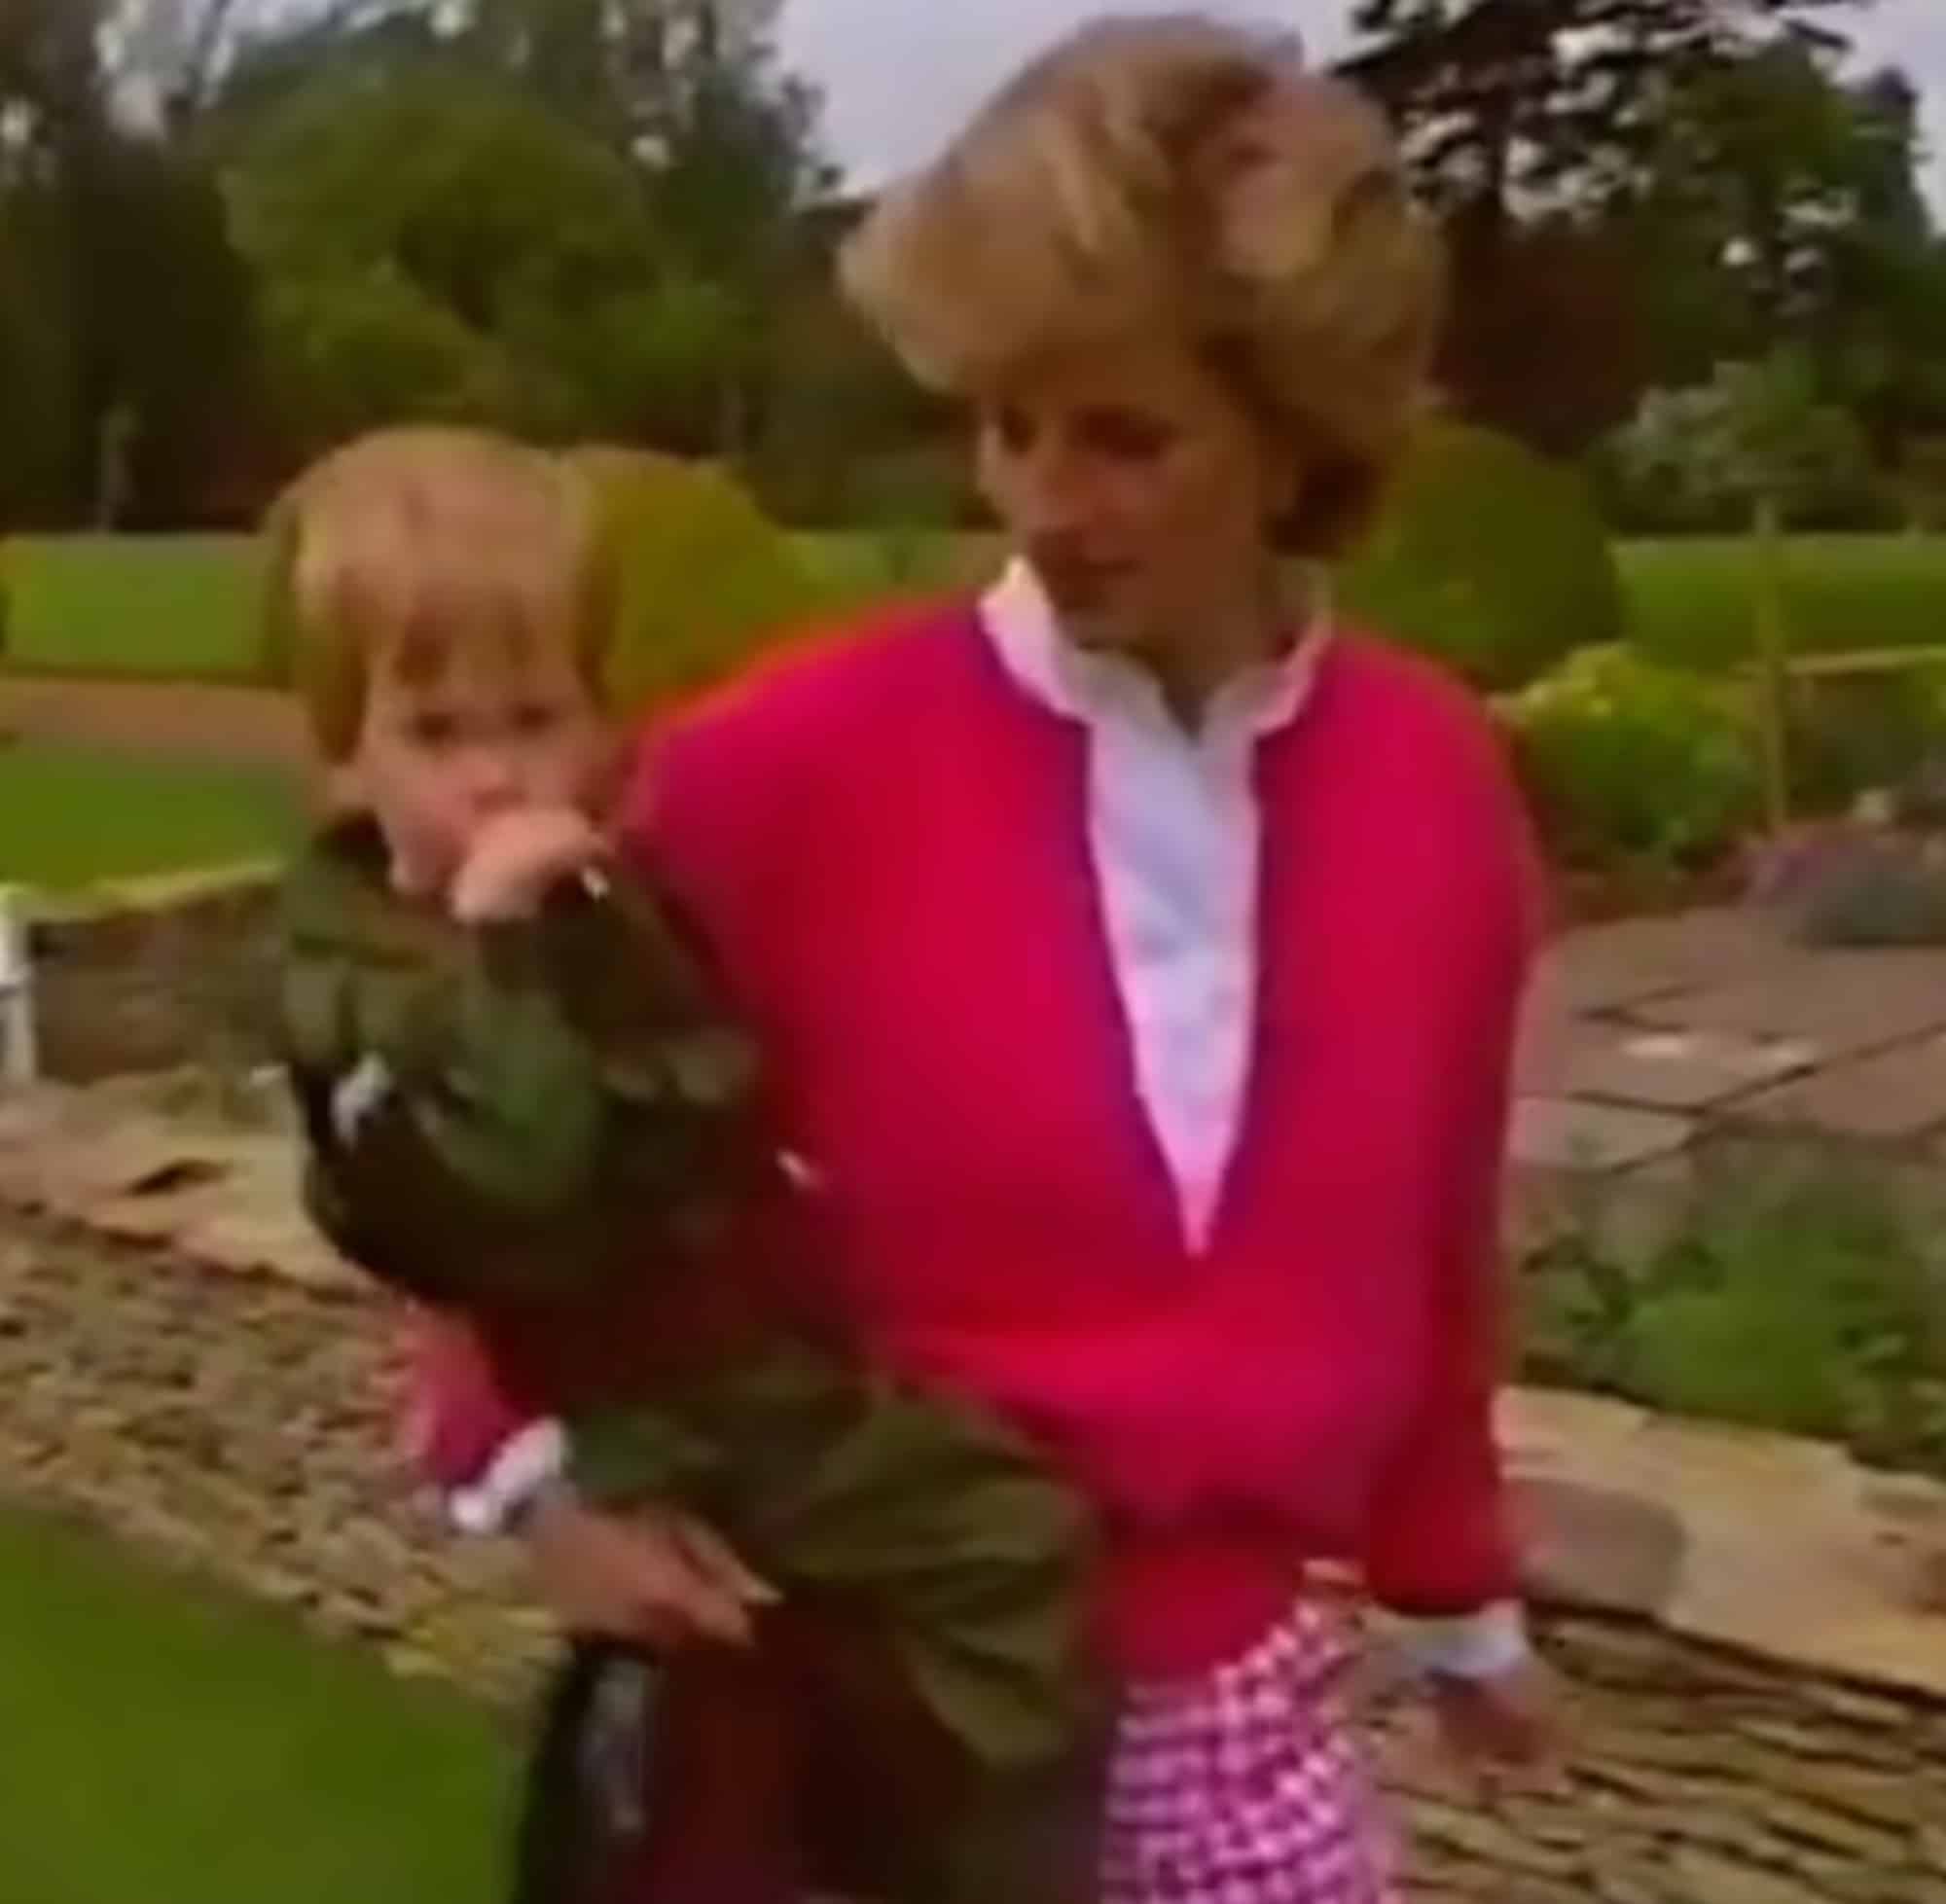 Άγνωστο βίντεο με την πριγκίπισσα Νταϊάνα να παίζει με τους γιους της, ήρθε στο φως της δημοσιότητας (εικόνες & βίντεο)